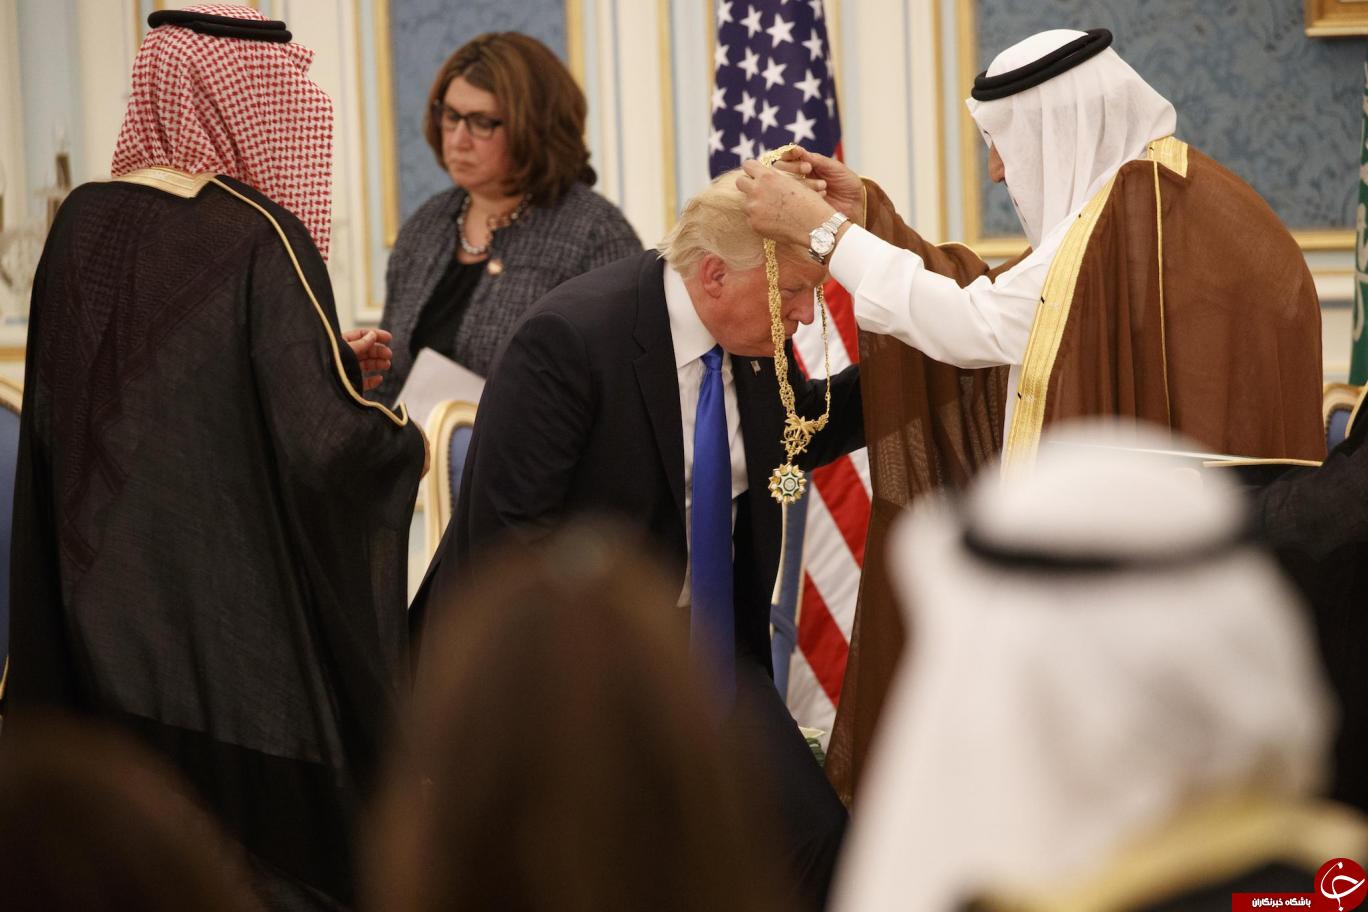 ادای احترام ترامپ در مقابل پادشاه عربستان جنجال برانگیز شد+ تصاویر